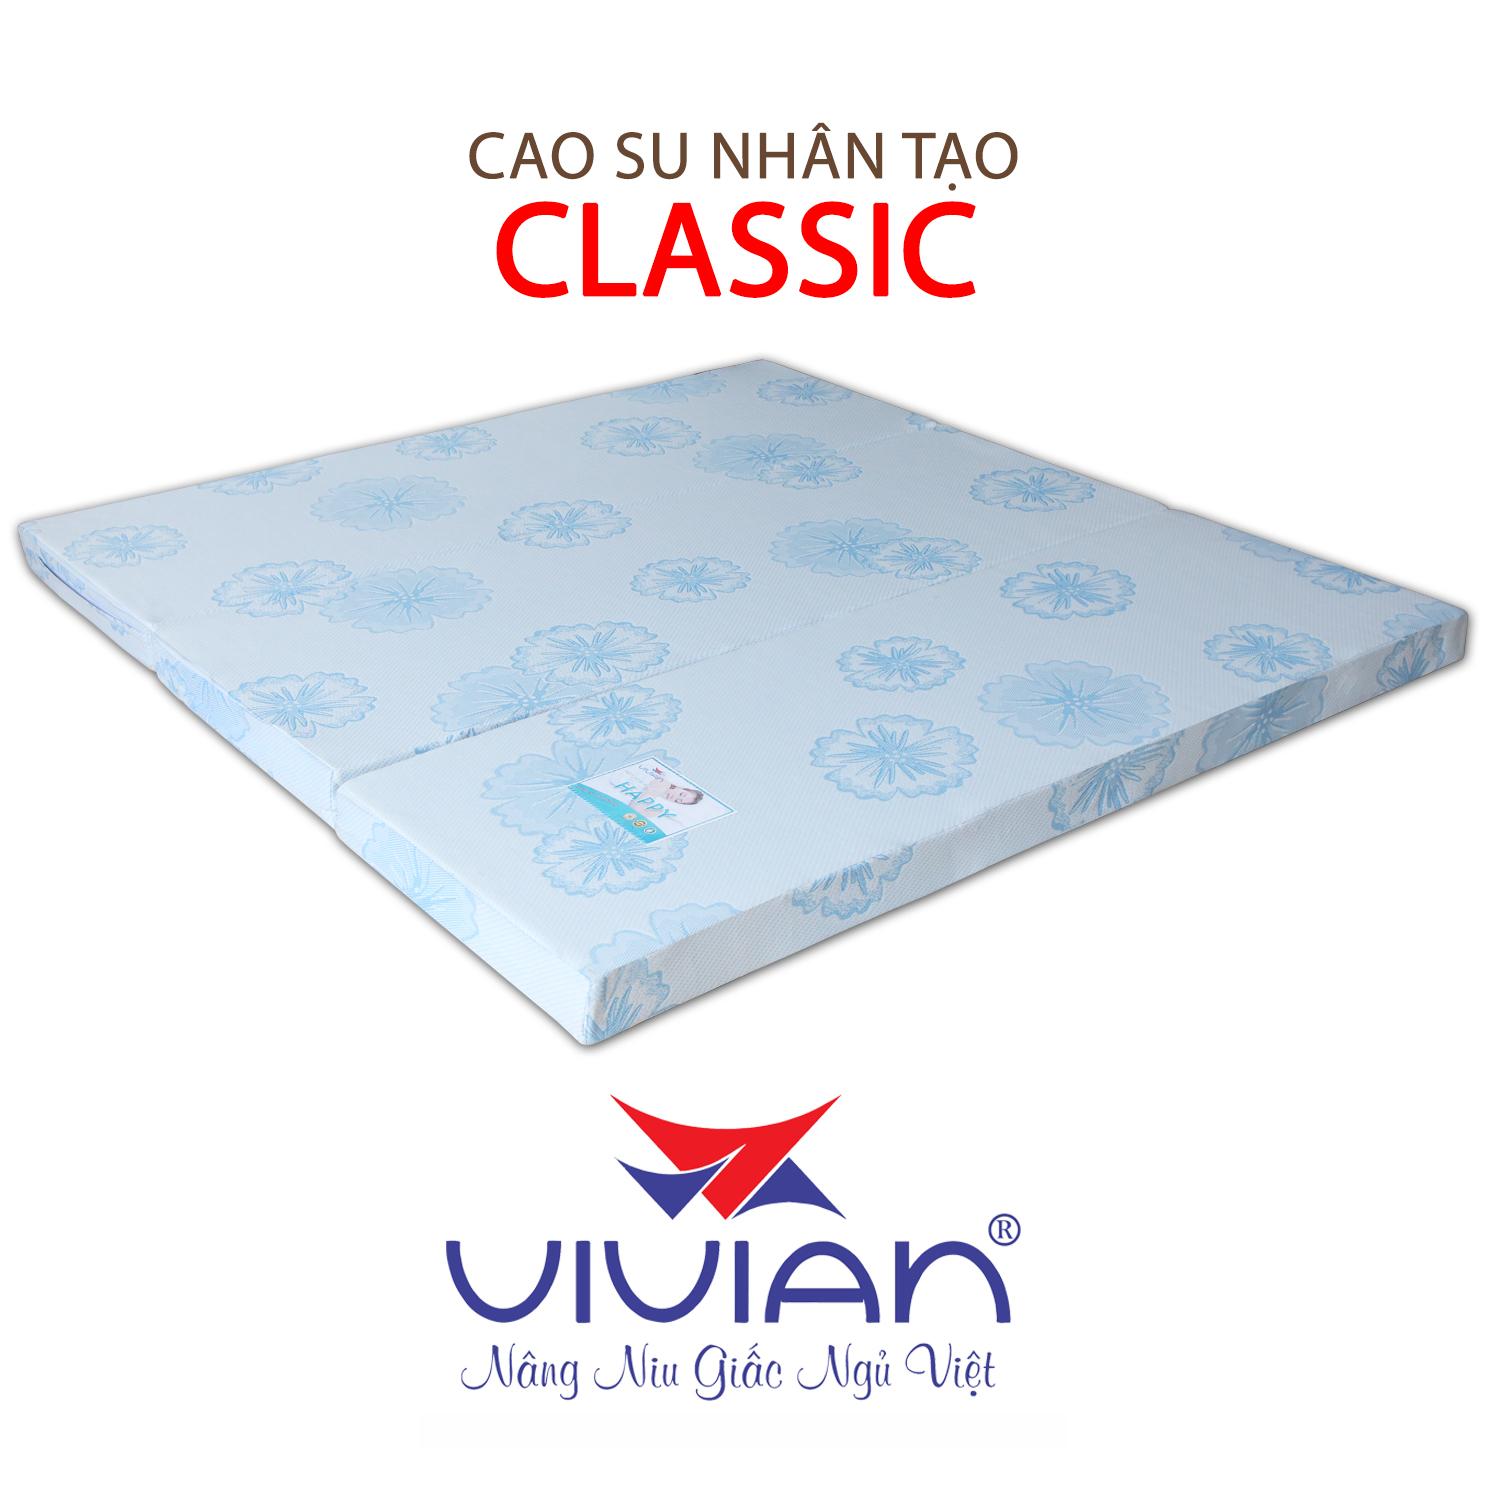 NỆM CAO SU NHÂN TẠO CLASSIC GẤP 3 VIVIAN 140X200X15